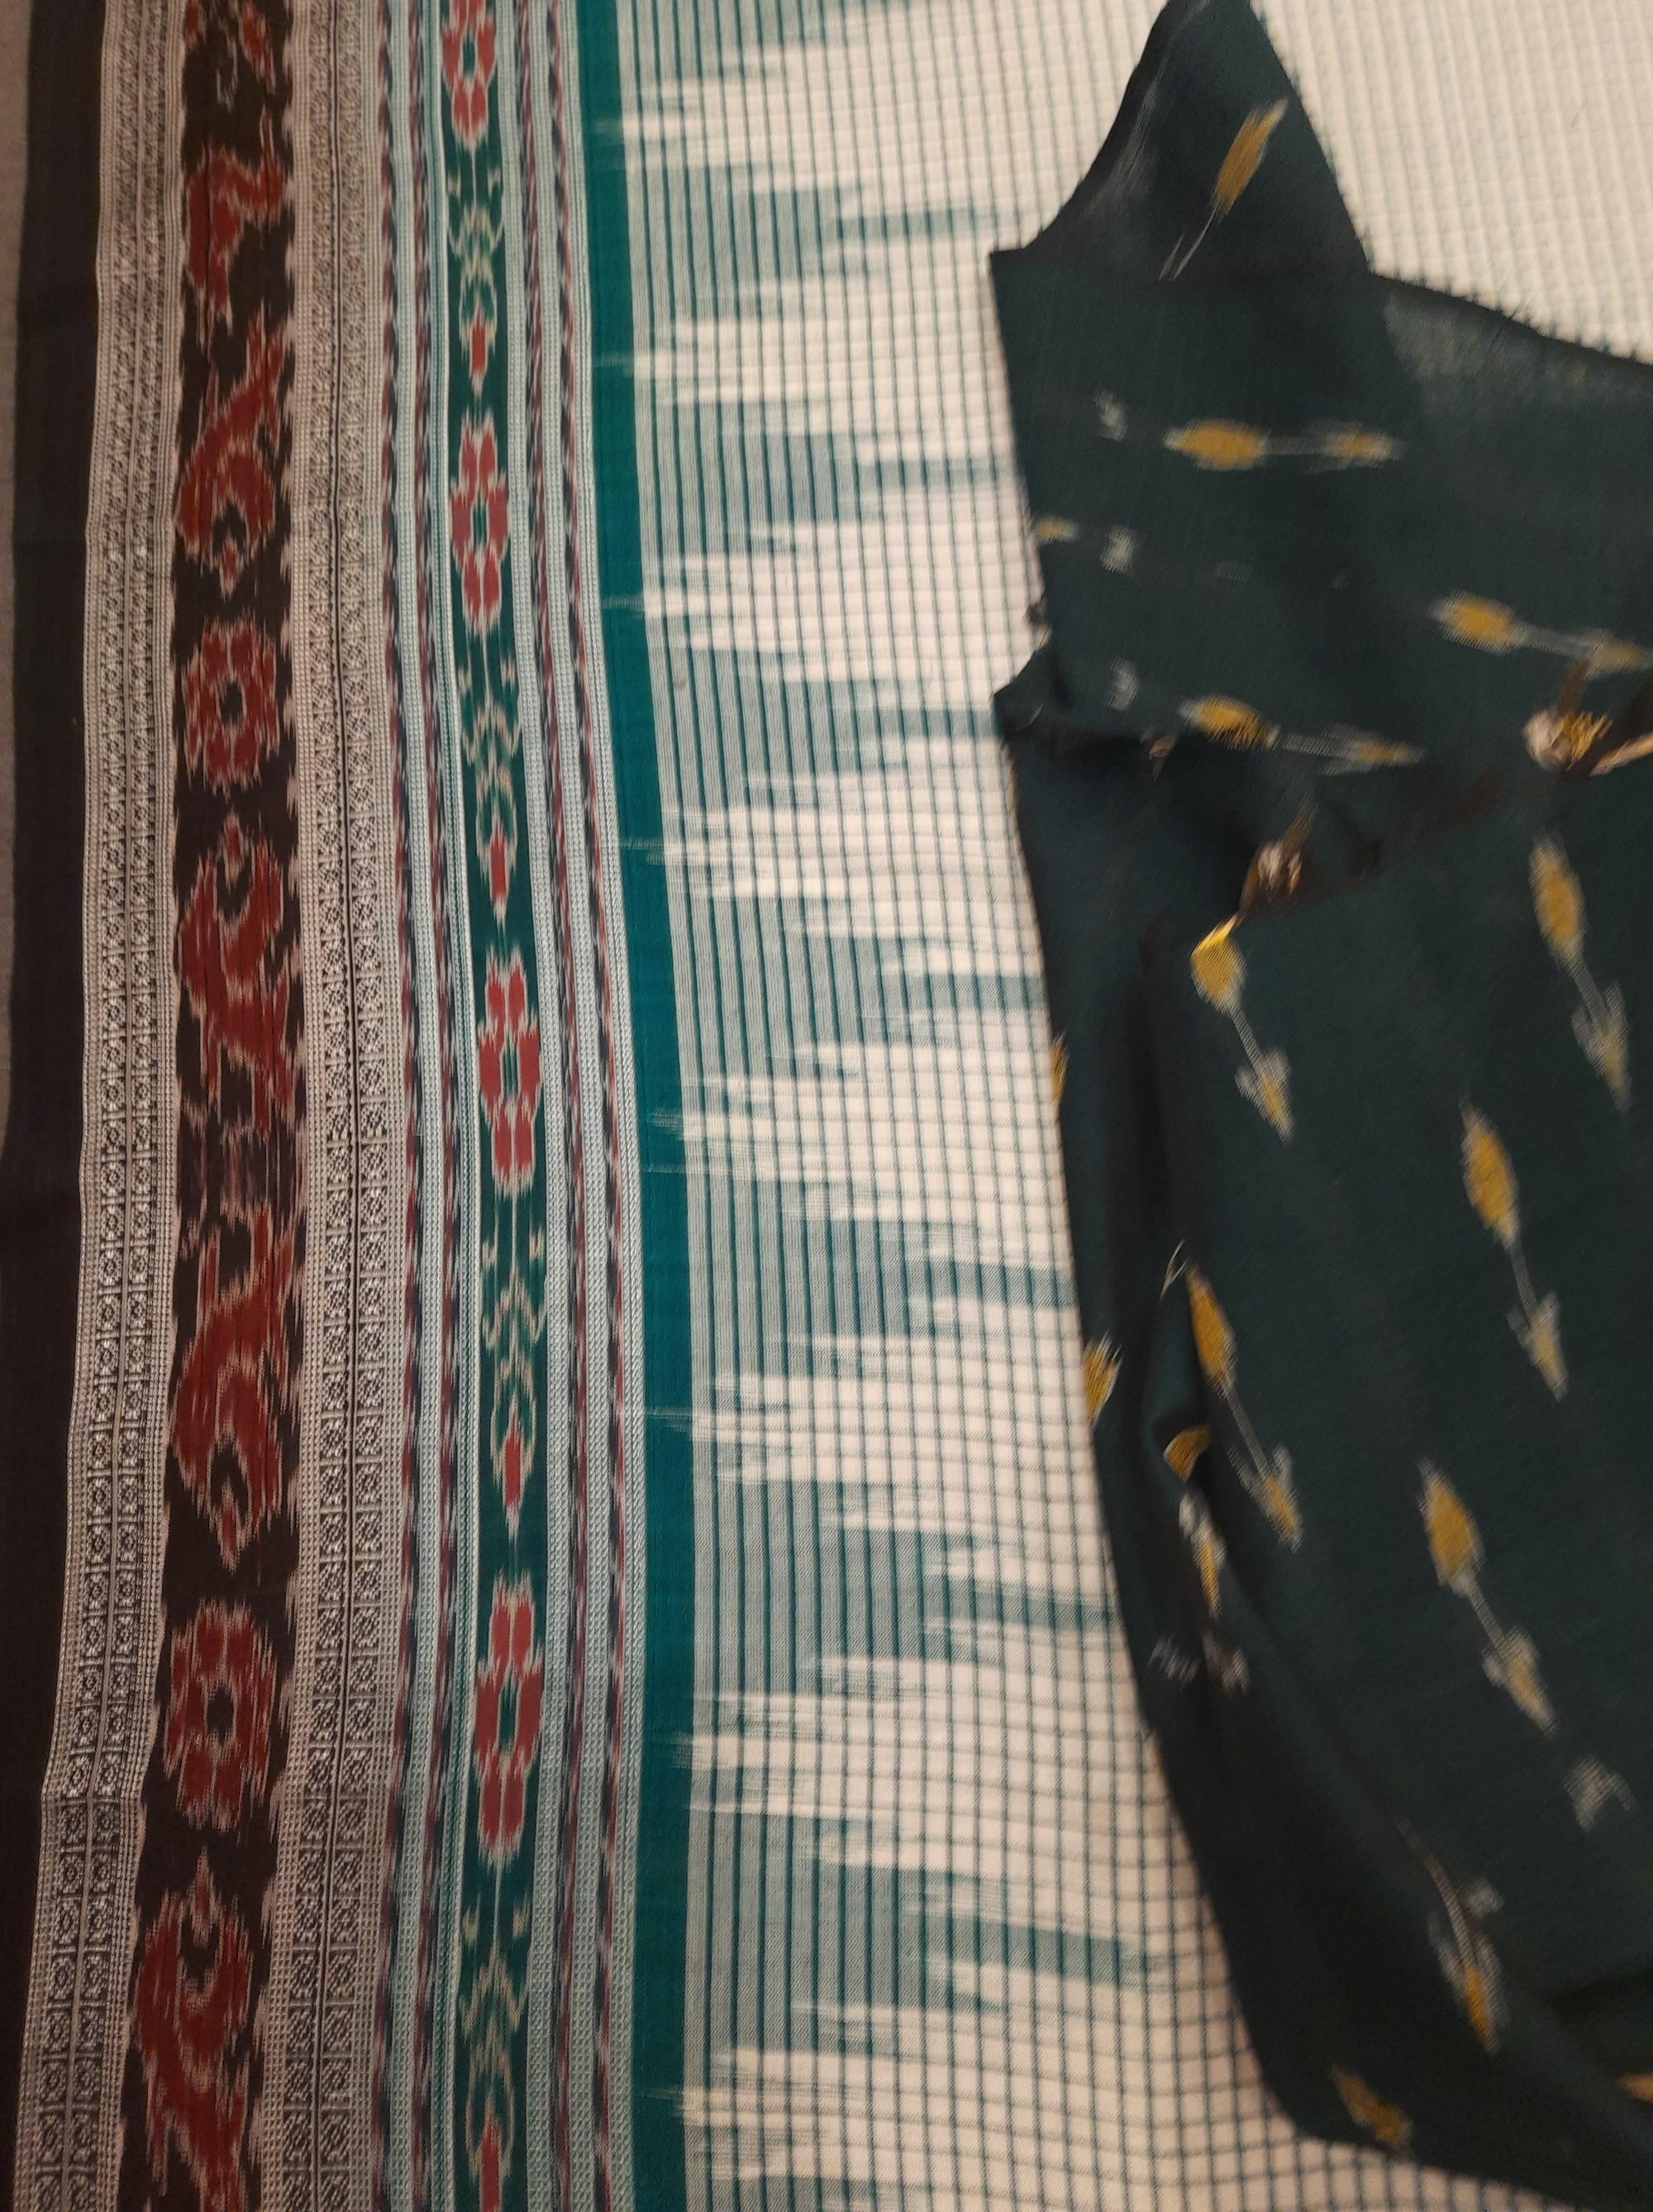 Green and Offwhite Sachipar Nuapatna Cotton Ikat saree with sambalpuri ikat blouse piece